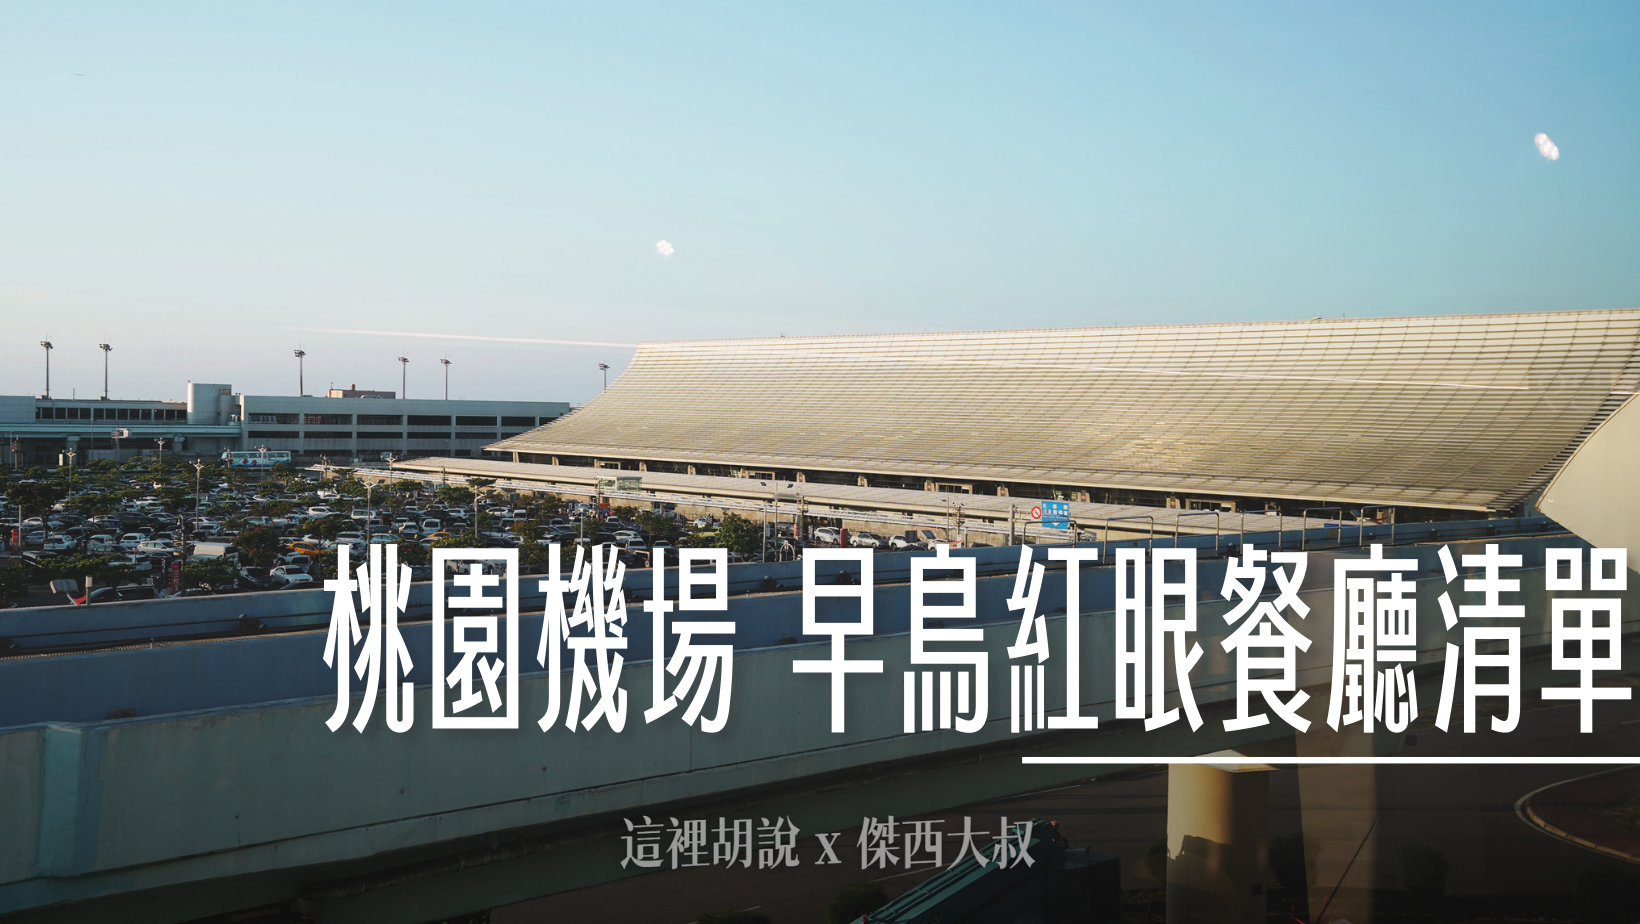 仙台機場懶人包 進出機場交通 機場設施全集